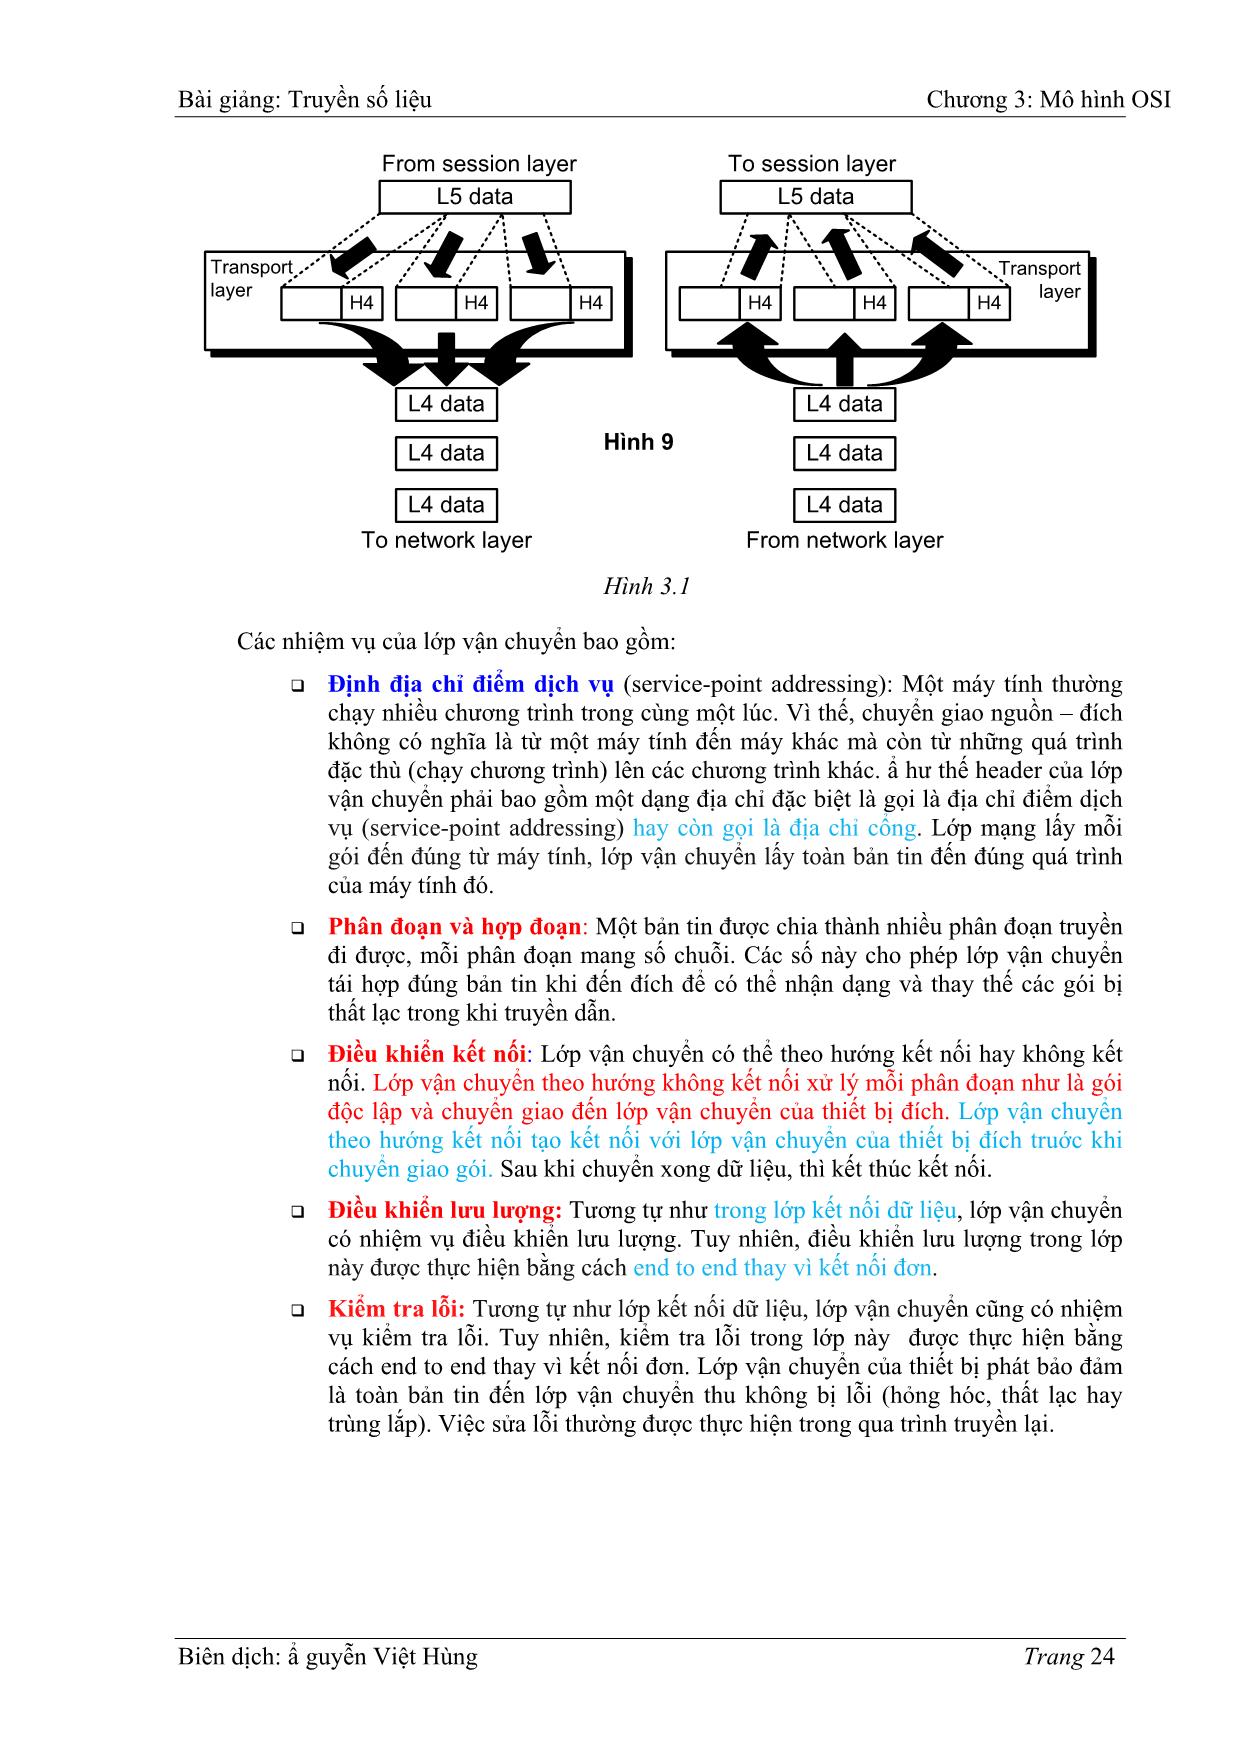 Bài giảng Truyền số liệu - Chương 3: Mô hình OIS - Nguyễn Việt Hùng trang 8